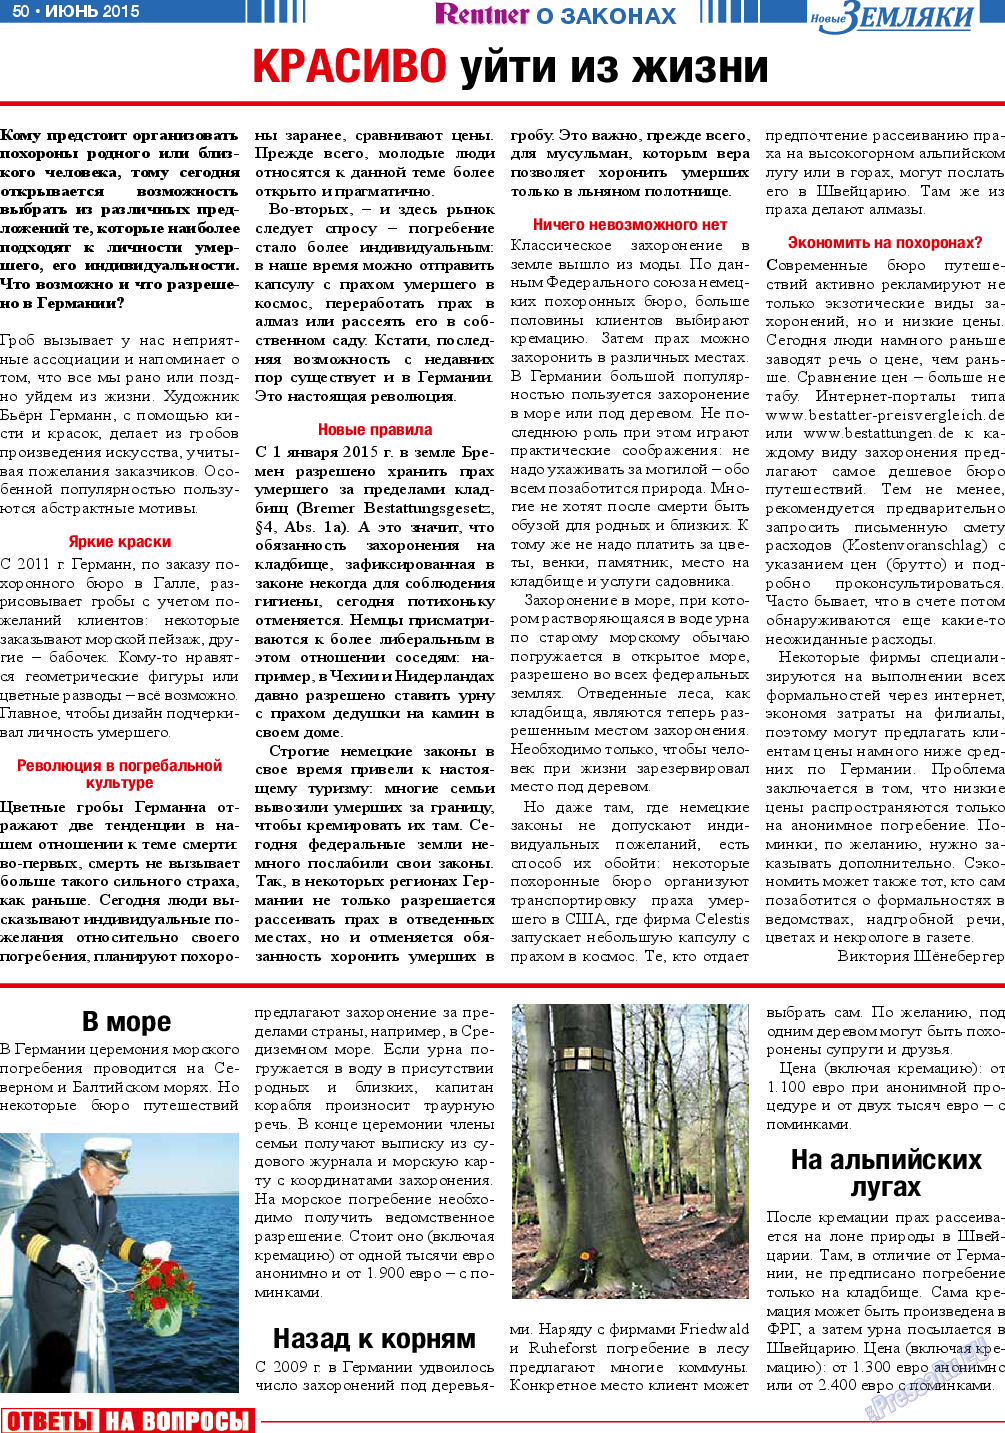 Новые Земляки, газета. 2015 №6 стр.50